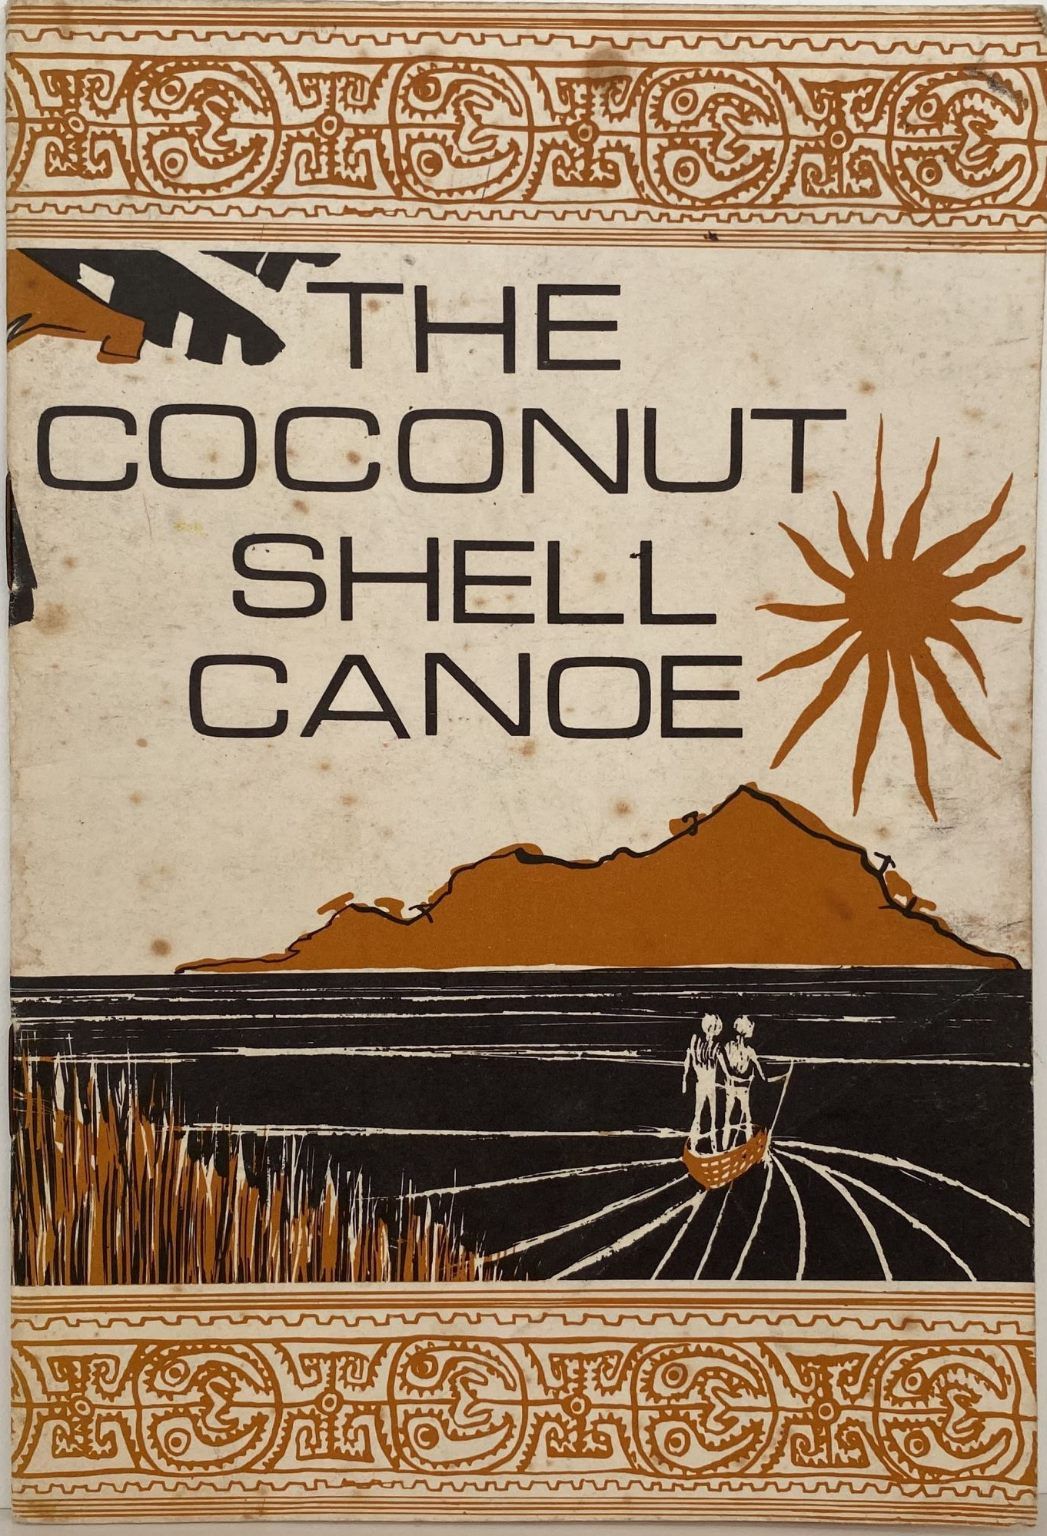 The Coconut Shell Canoe